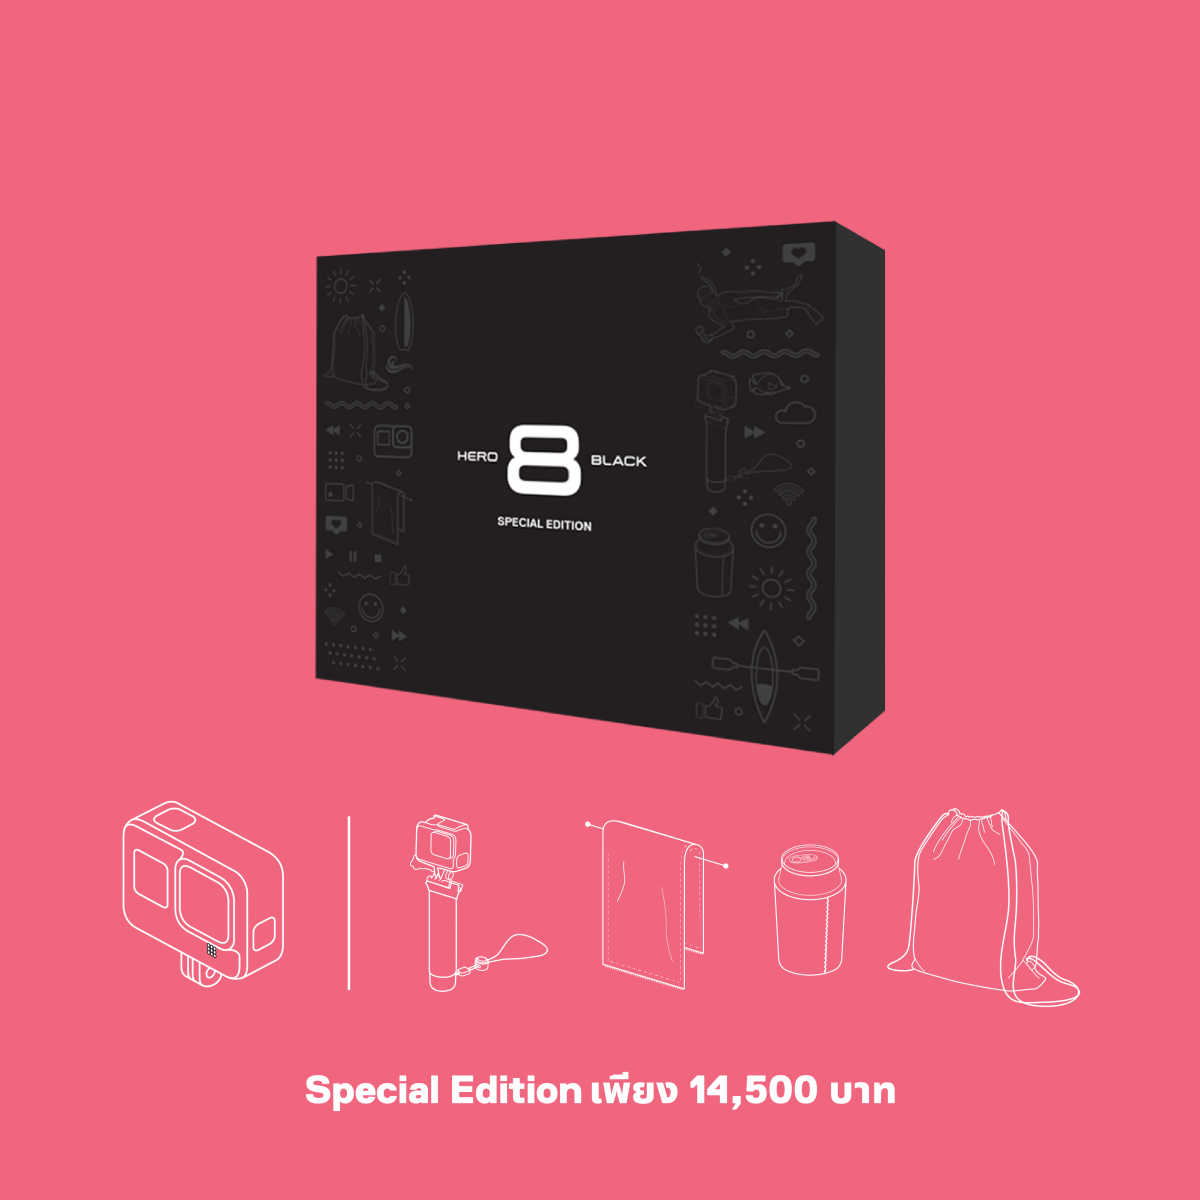 เตรียมพร้อมสำหรับทุกกิจกรรมของคุณแบบ Limited Edition ด้วยเซ็ตกล้อง GoPro HERO8 Black Special Edition สุดคุ้มในราคาเพียง 14,500 บาท